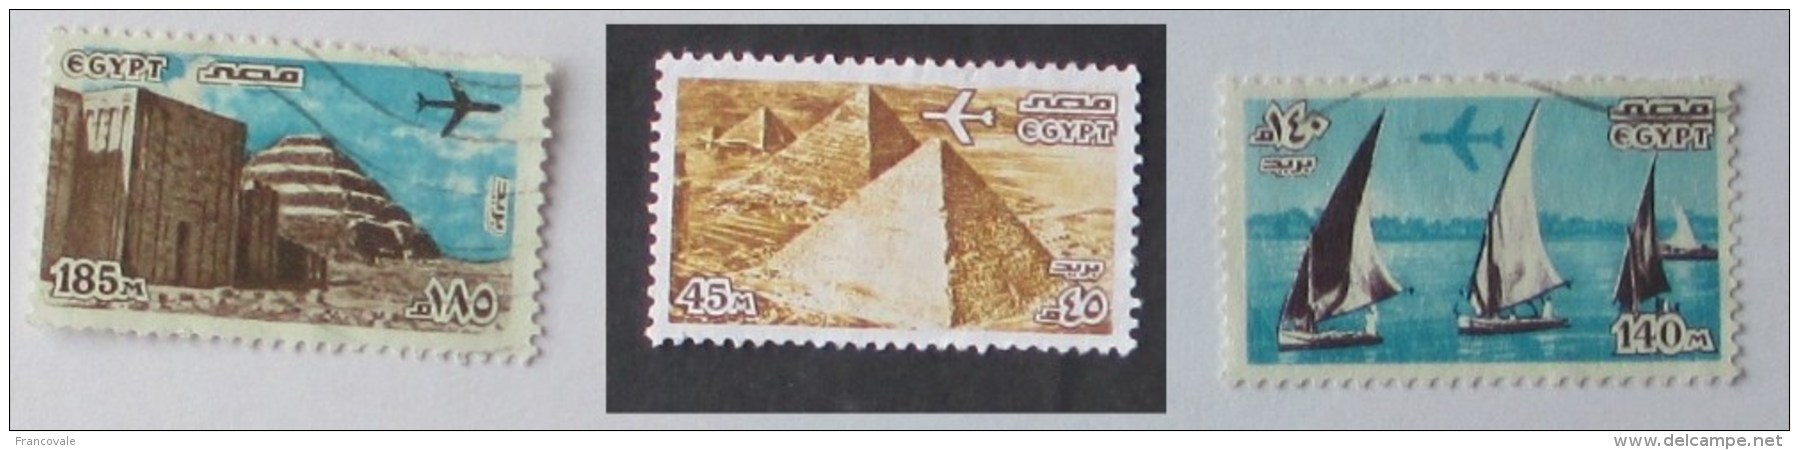 Egitto 1978 Air Mail 3 Stamps Used  Aereo Sulle Piramidi E Sul Nilo Pyramids And Nile - Oblitérés